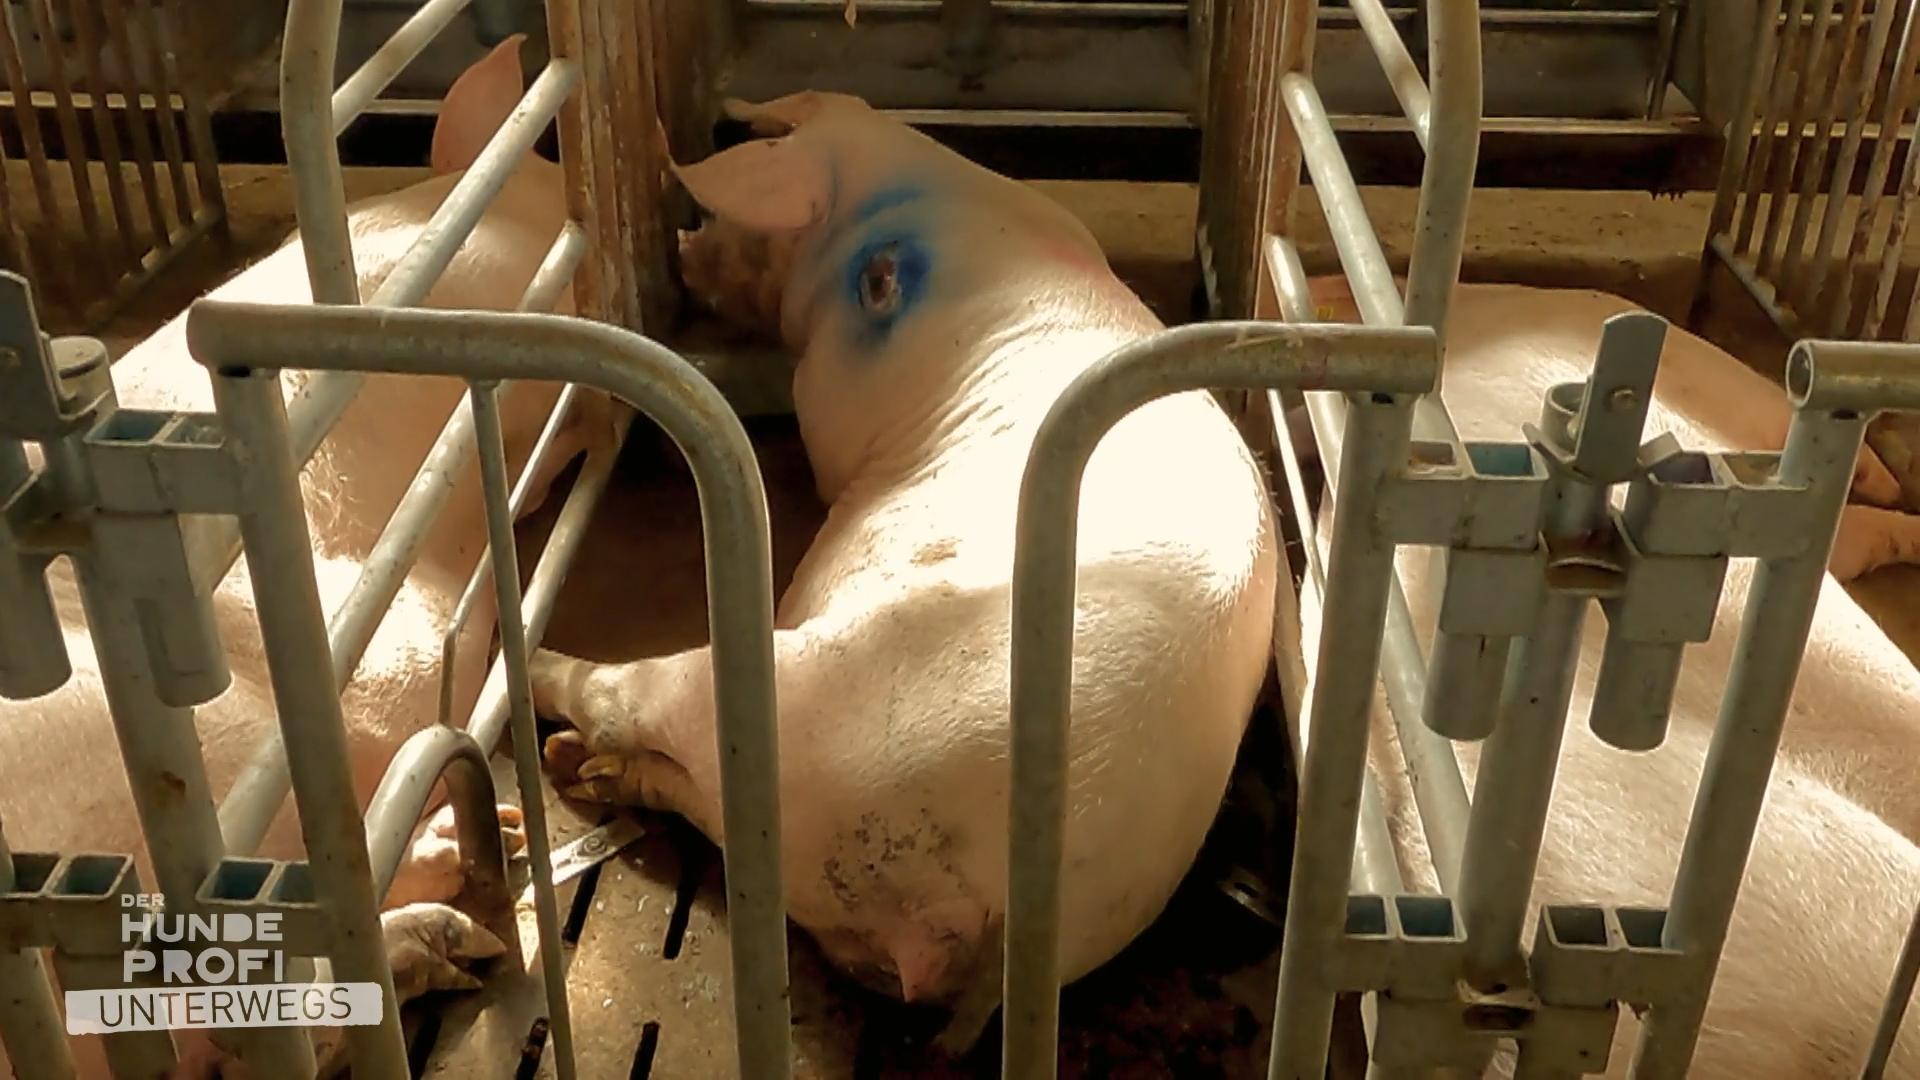 Das Beste der konventionelle Schweinehaltung "Wir machen nichts Verbotenes"